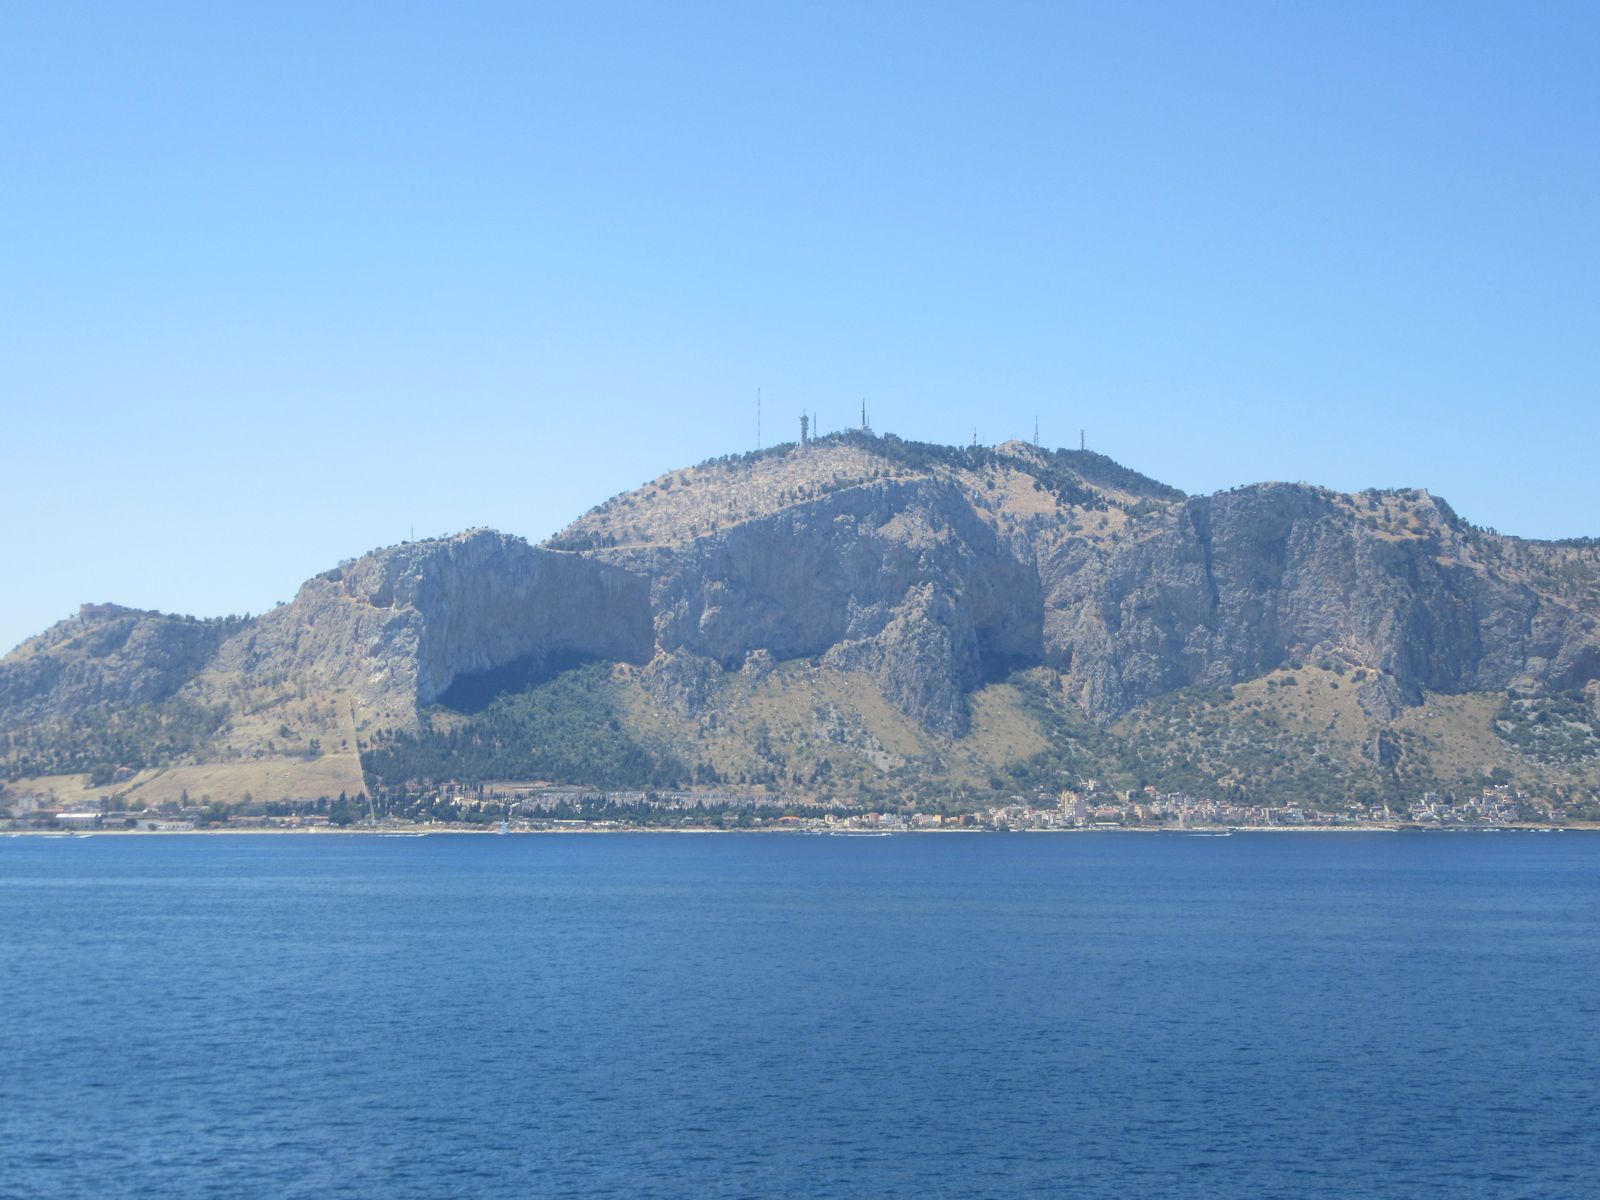 Monte Pellegrino bei Palermo vom Meer aus gesehen. Rosalias Grotte liegt rechts von den Antennen.